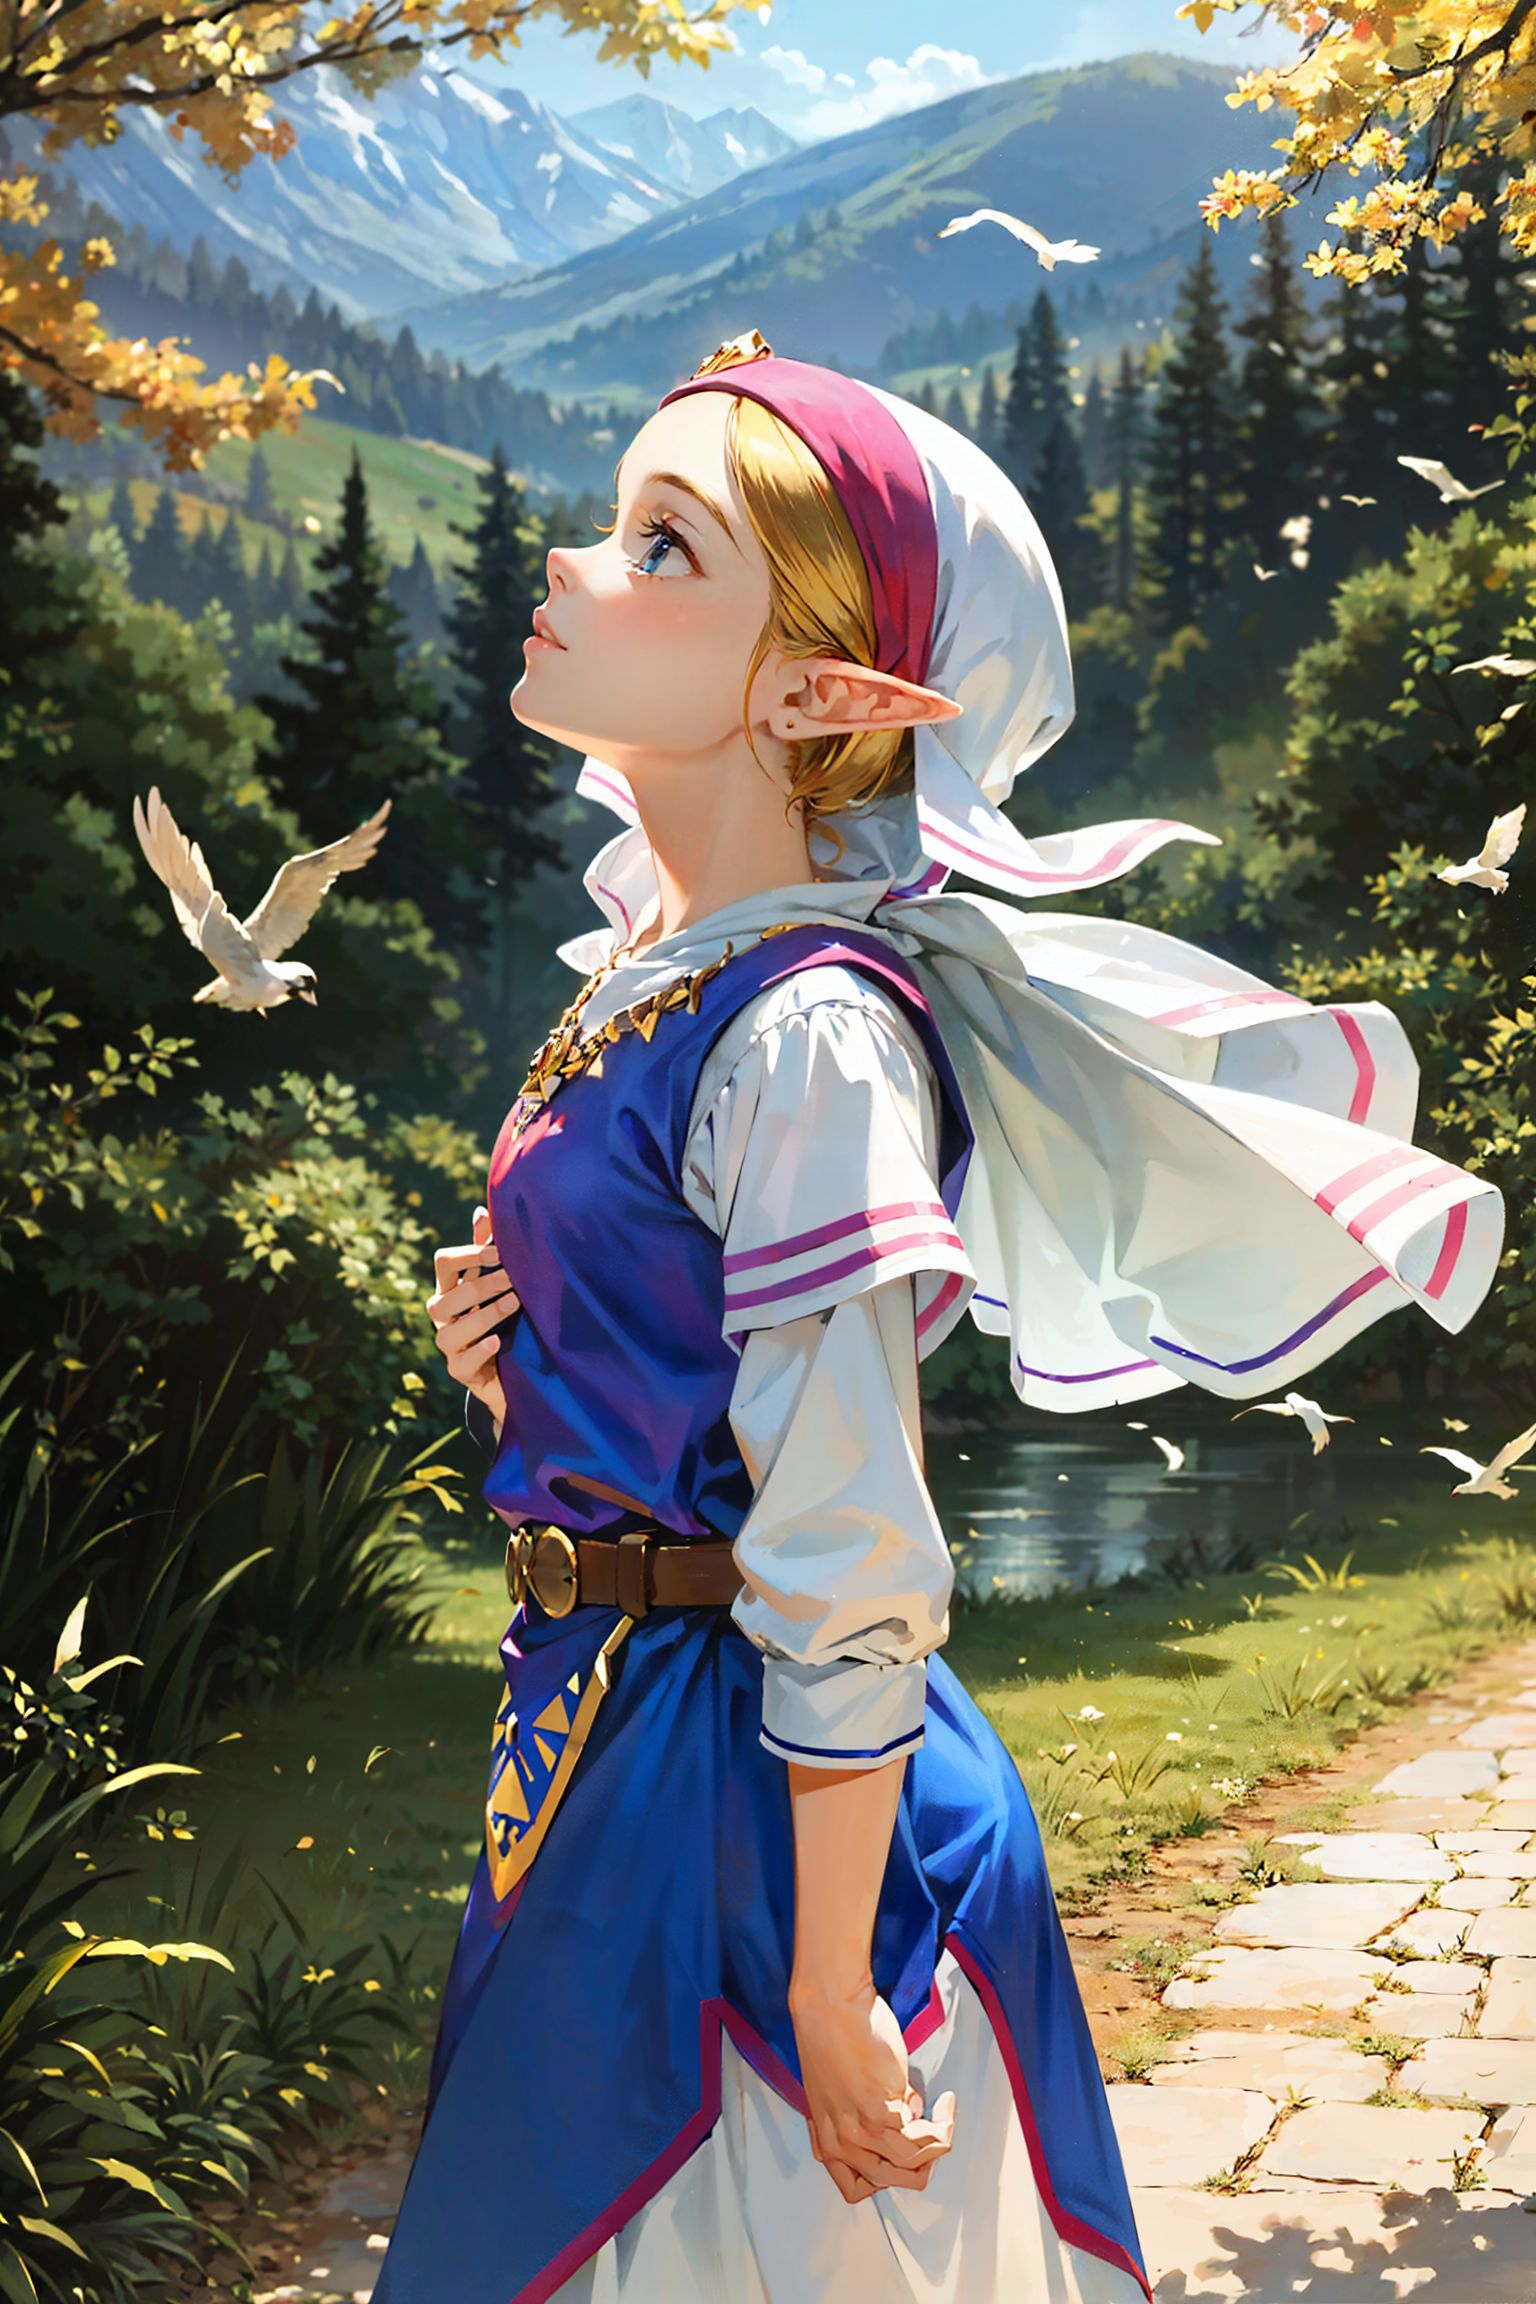 Young Zelda (OoT) image by Arnike